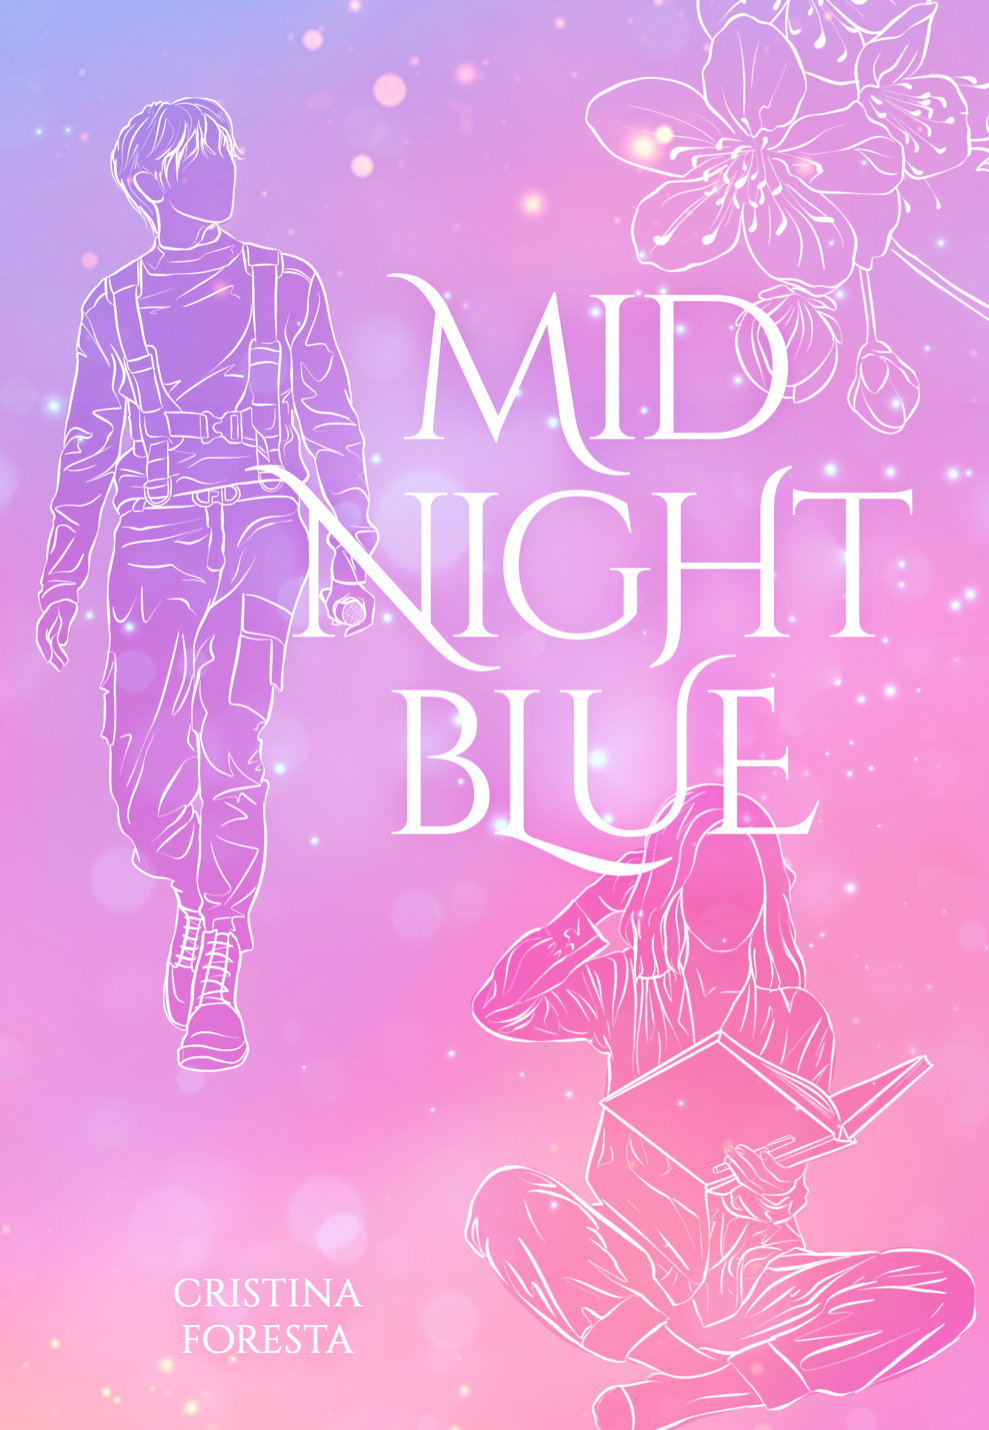 Segnalazione di uscita “Midnight blue” di Cristina Foresta